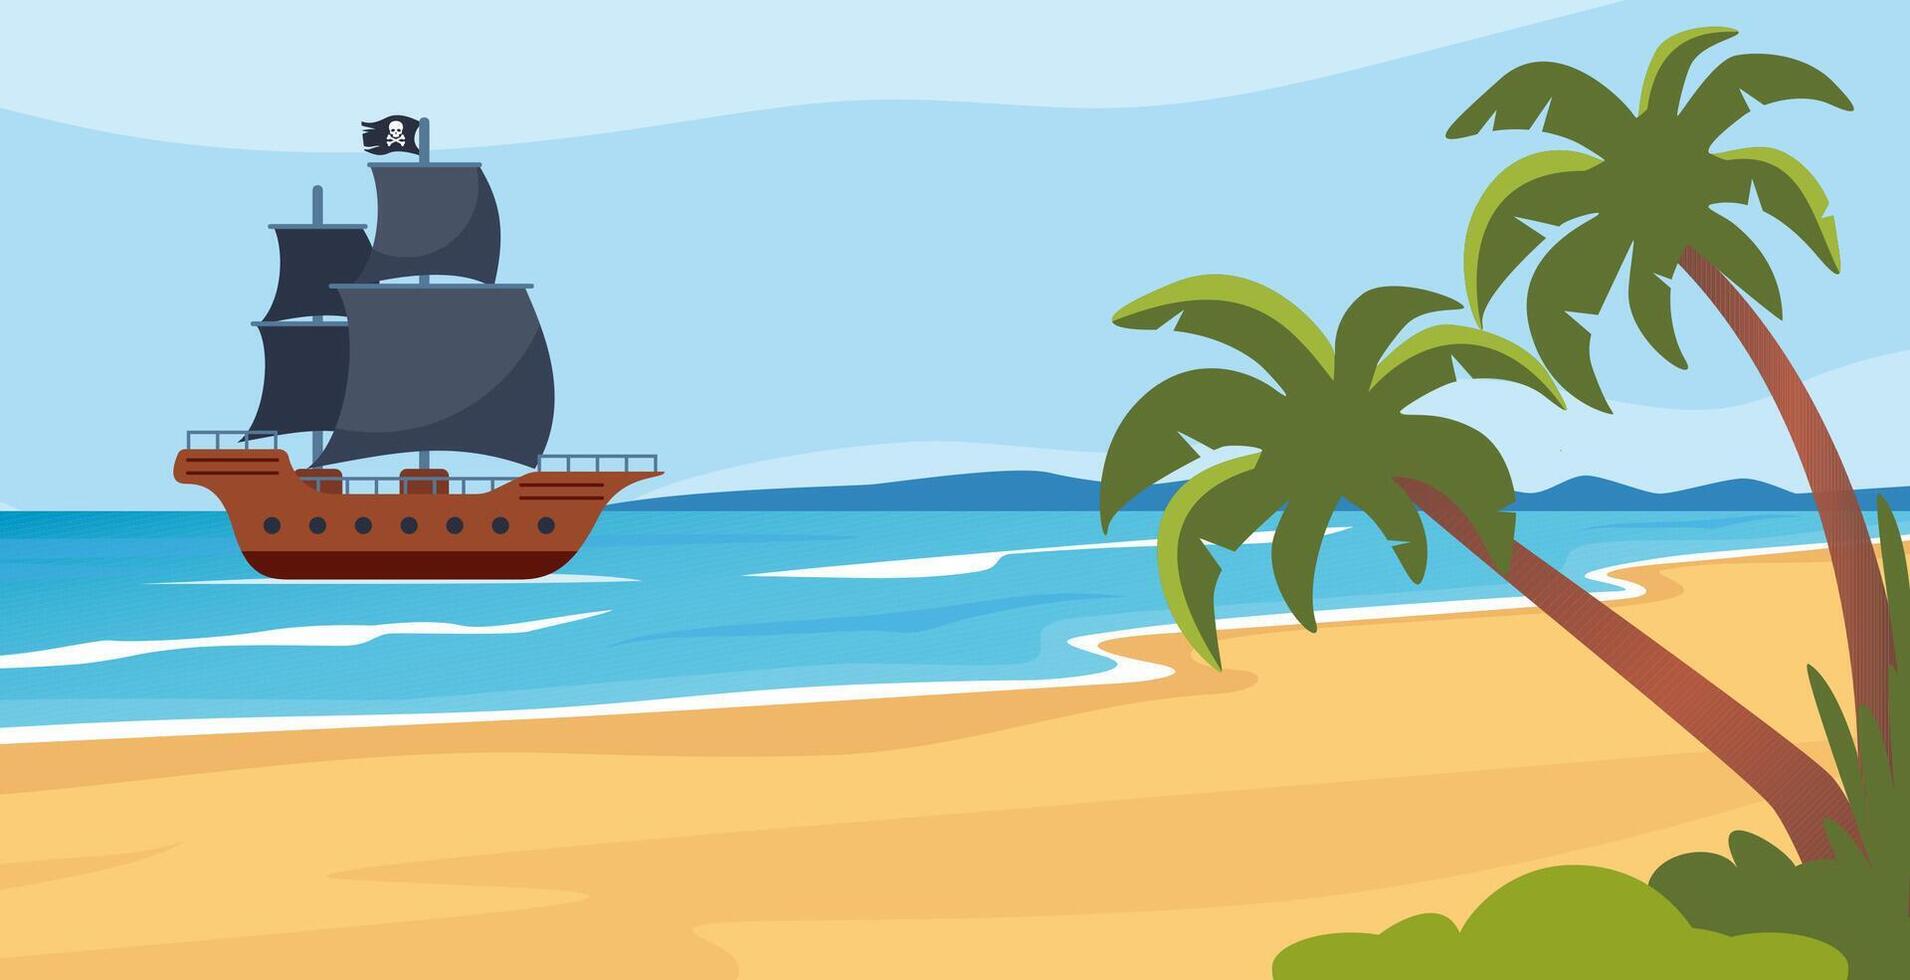 tropisch Insel und Pirat Schiff in der Nähe von das Insel. Meer Landschaft mit segeln Boot mit Schädel auf schwarz Segel, Palme Bäume auf unbewohnt Insel. Vektor Illustration.